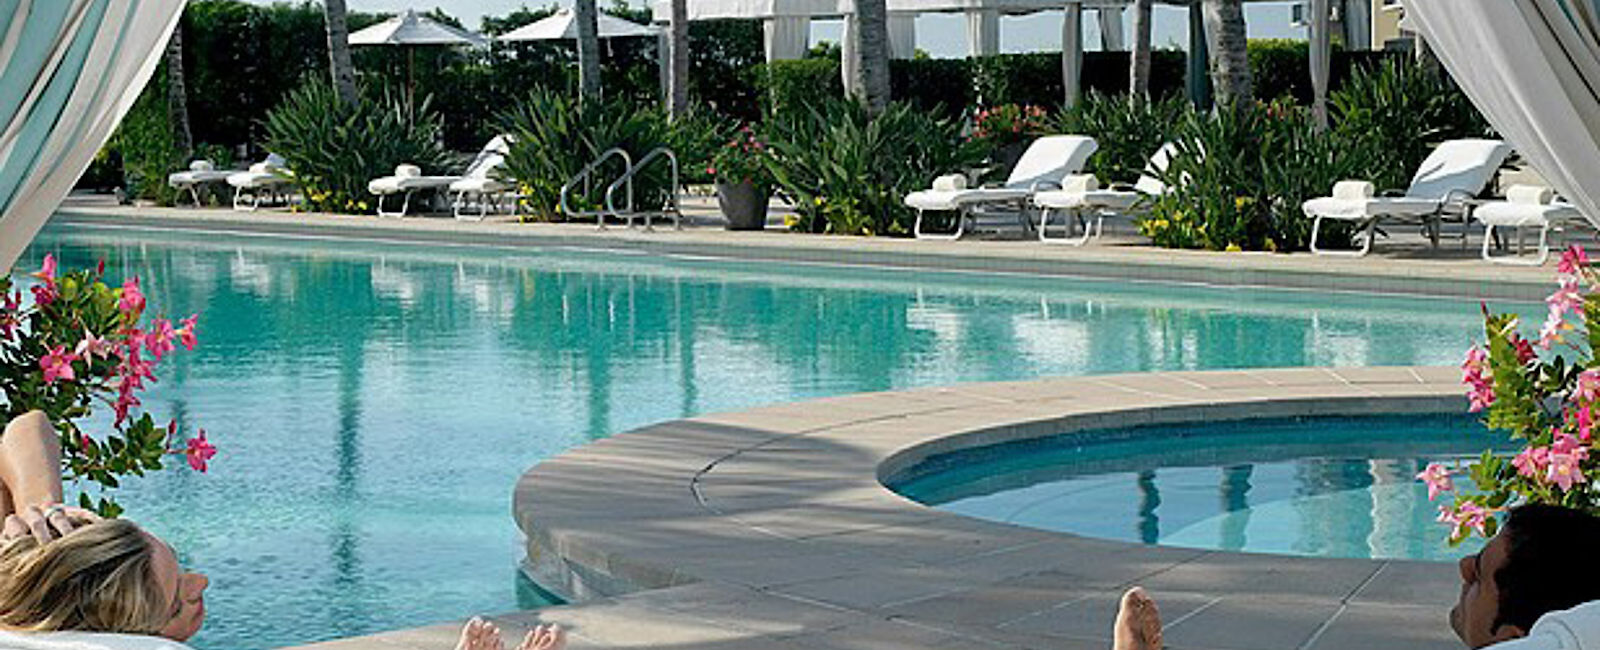 HOTEL TIPPS
 Four Seasons Hotel Miami 
 Elegantes Luxus Anwesen in der Weltmetropole Miami 